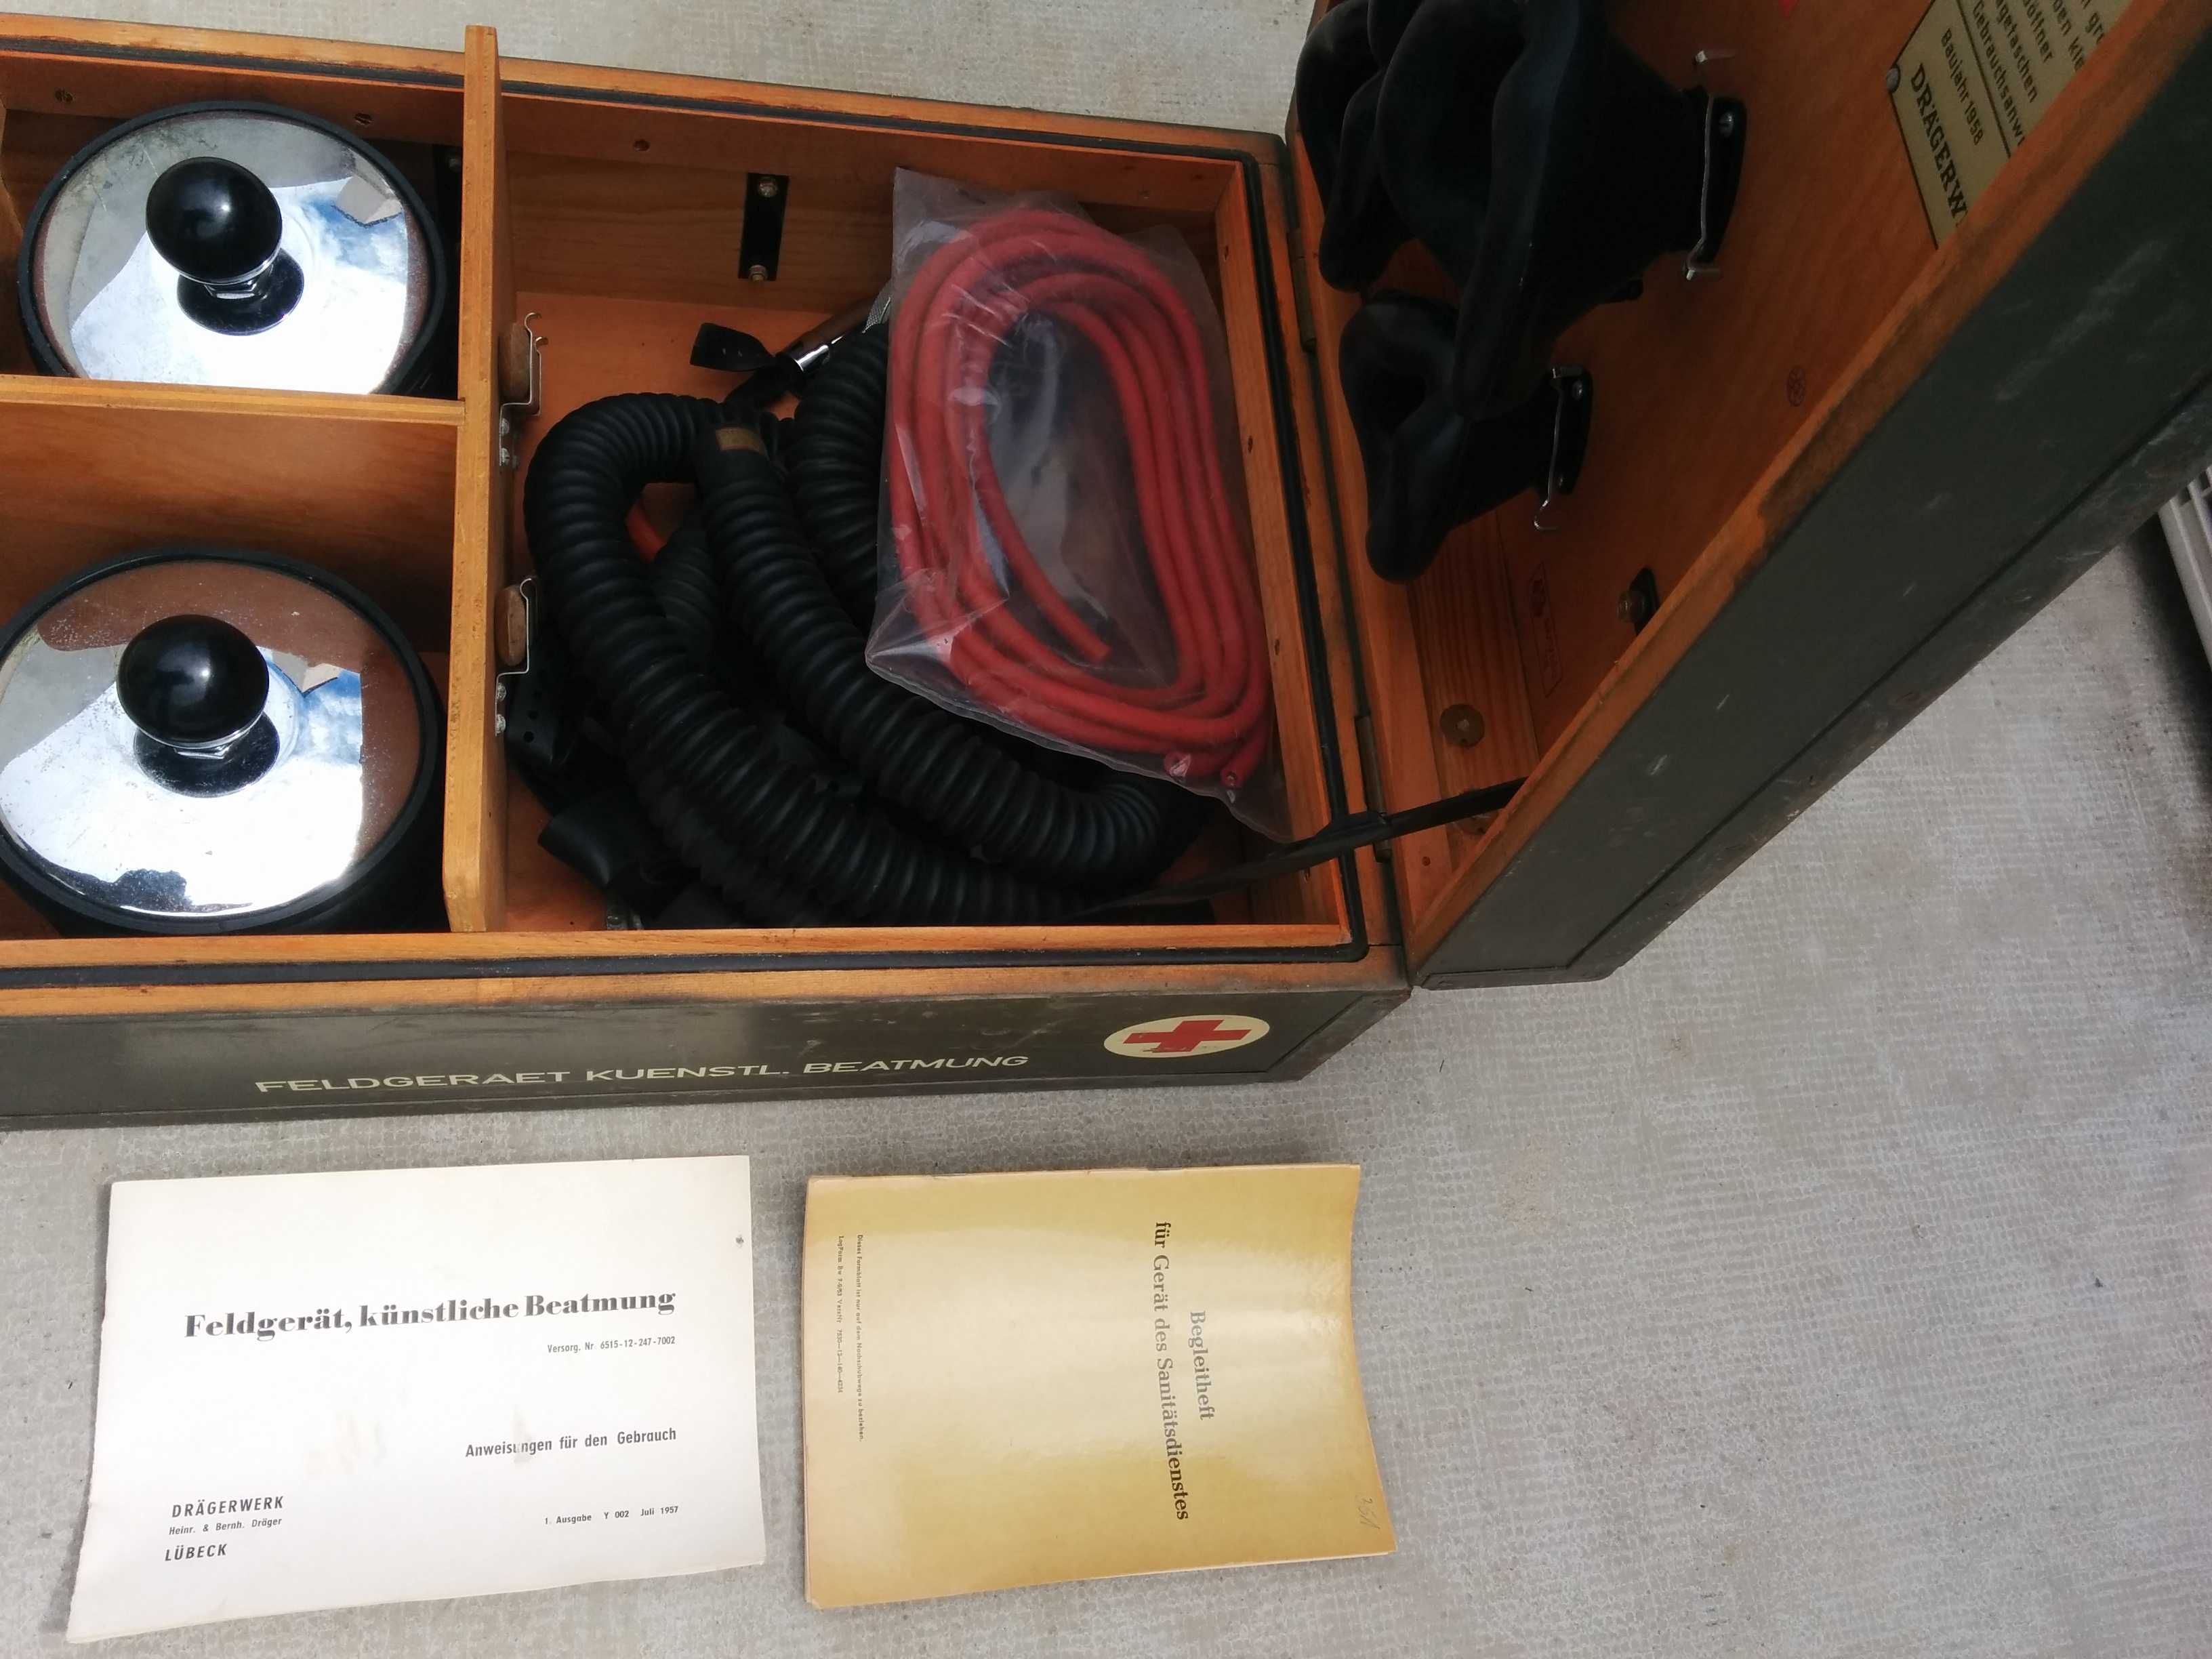 Kit de reanimação/respiração artificial. Militar. Drager 1958 Vintage.